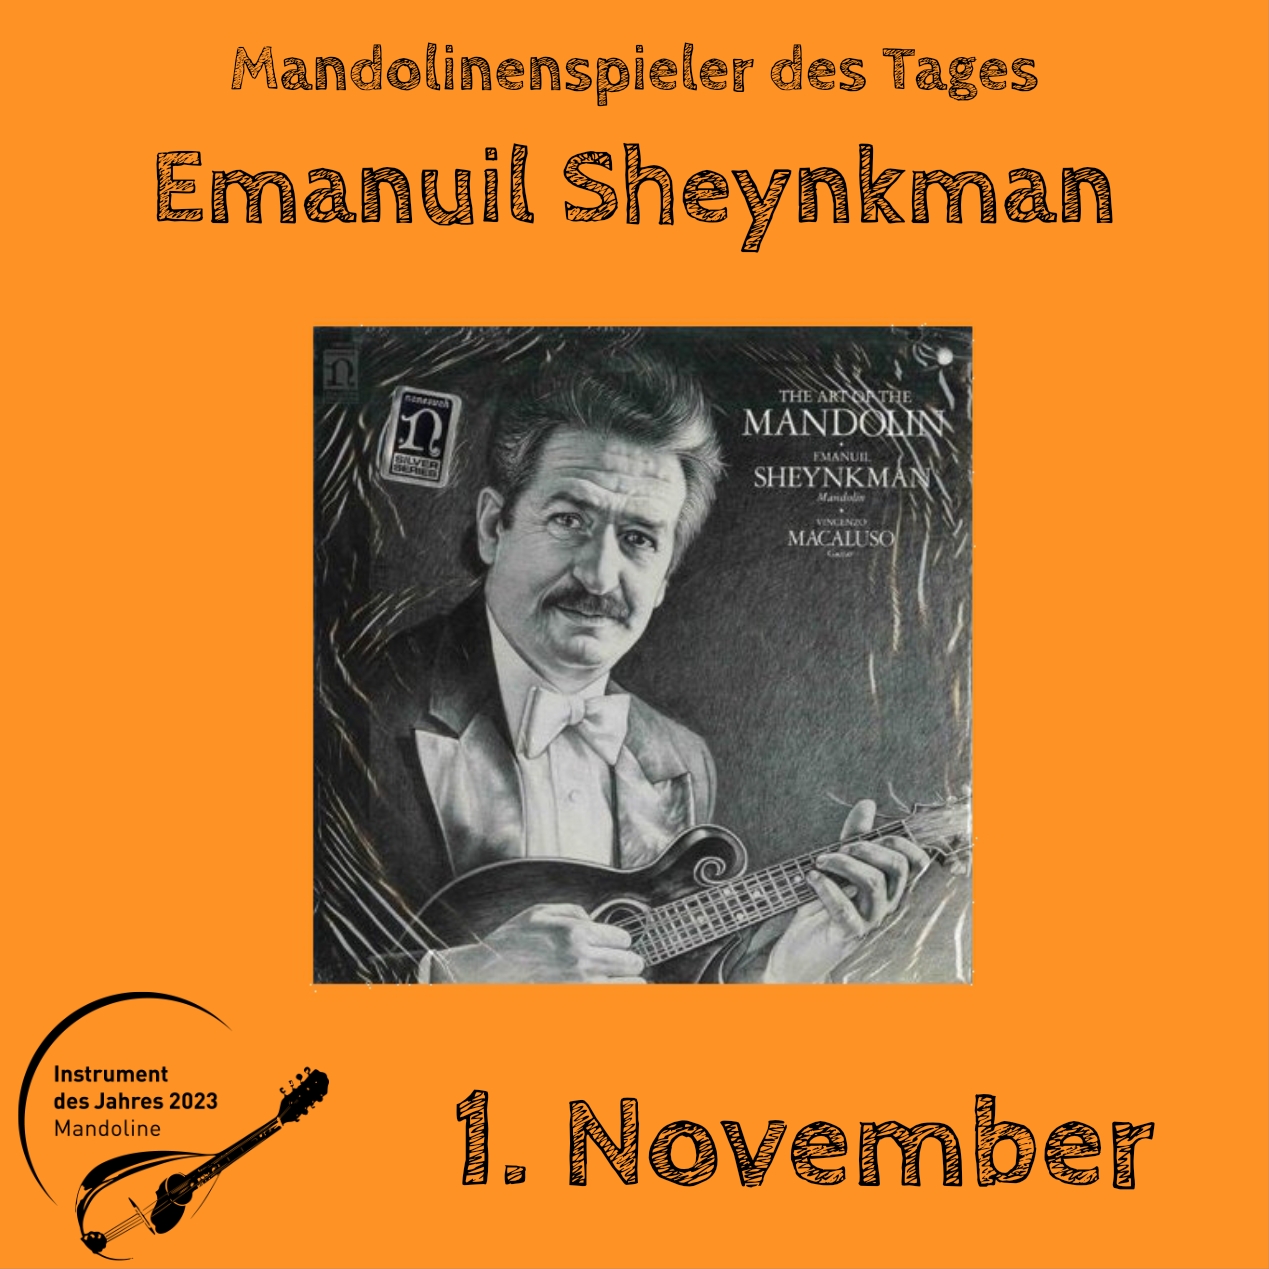 1. November - Emanuil Sheynkman Instrument des Jahres 2023 Mandolinenspieler Mandolinenspielerin des Tages